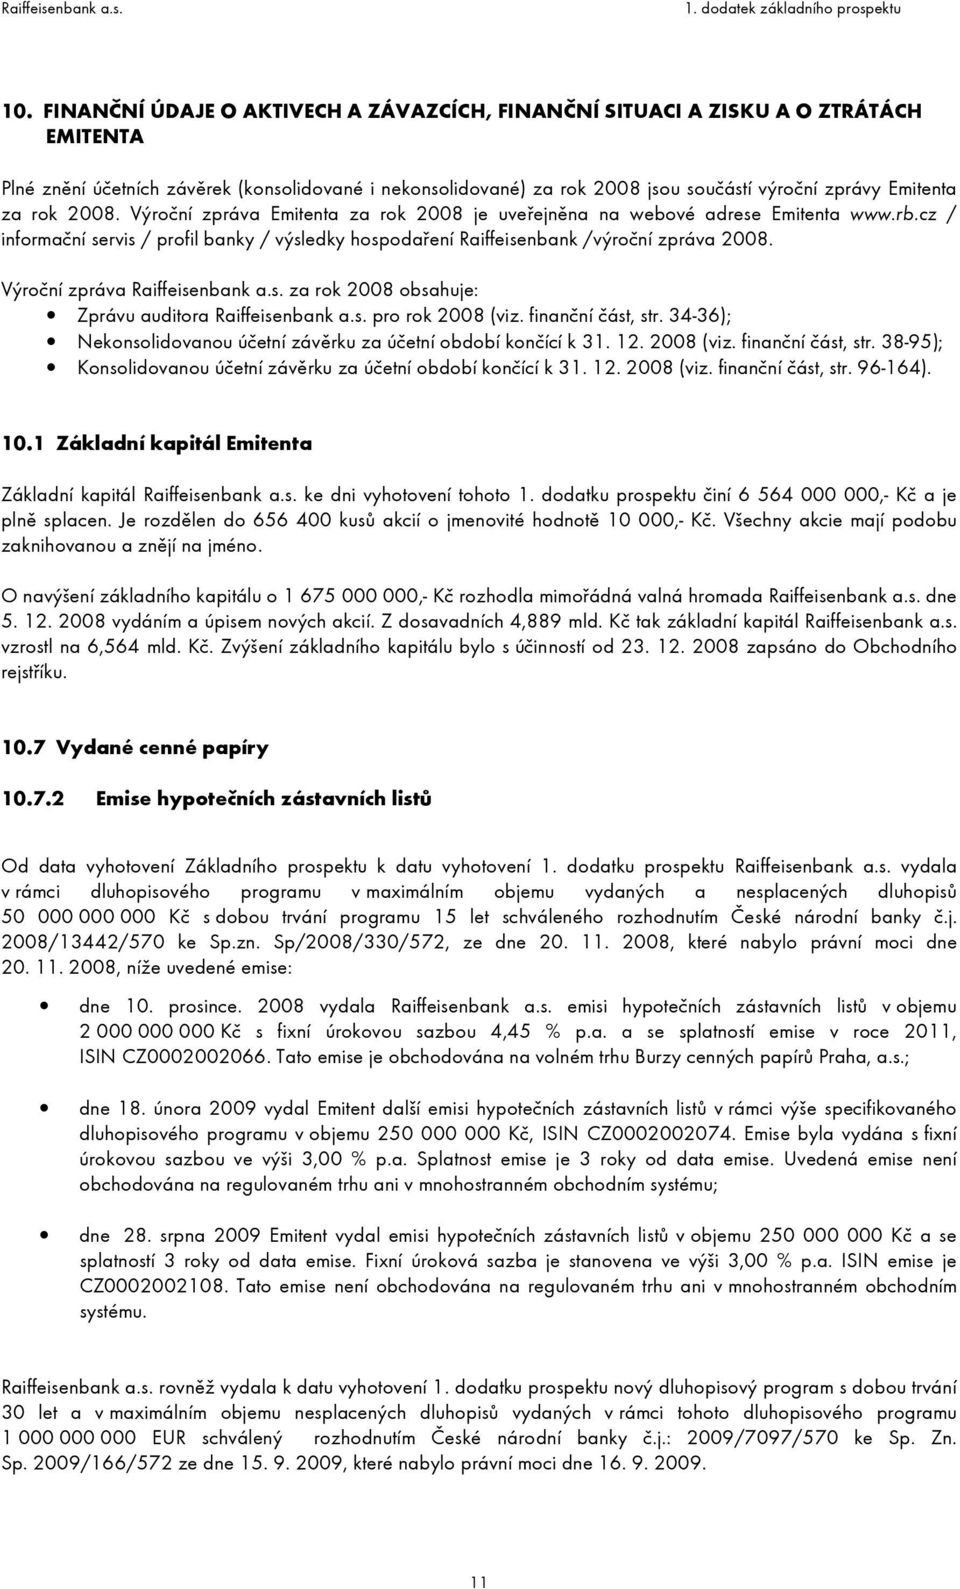 cz / informační servis / profil banky / výsledky hospodaření Raiffeisenbank /výroční zpráva 2008. Výroční zpráva Raiffeisenbank a.s. za rok 2008 obsahuje: Zprávu auditora Raiffeisenbank a.s. pro rok 2008 (viz.